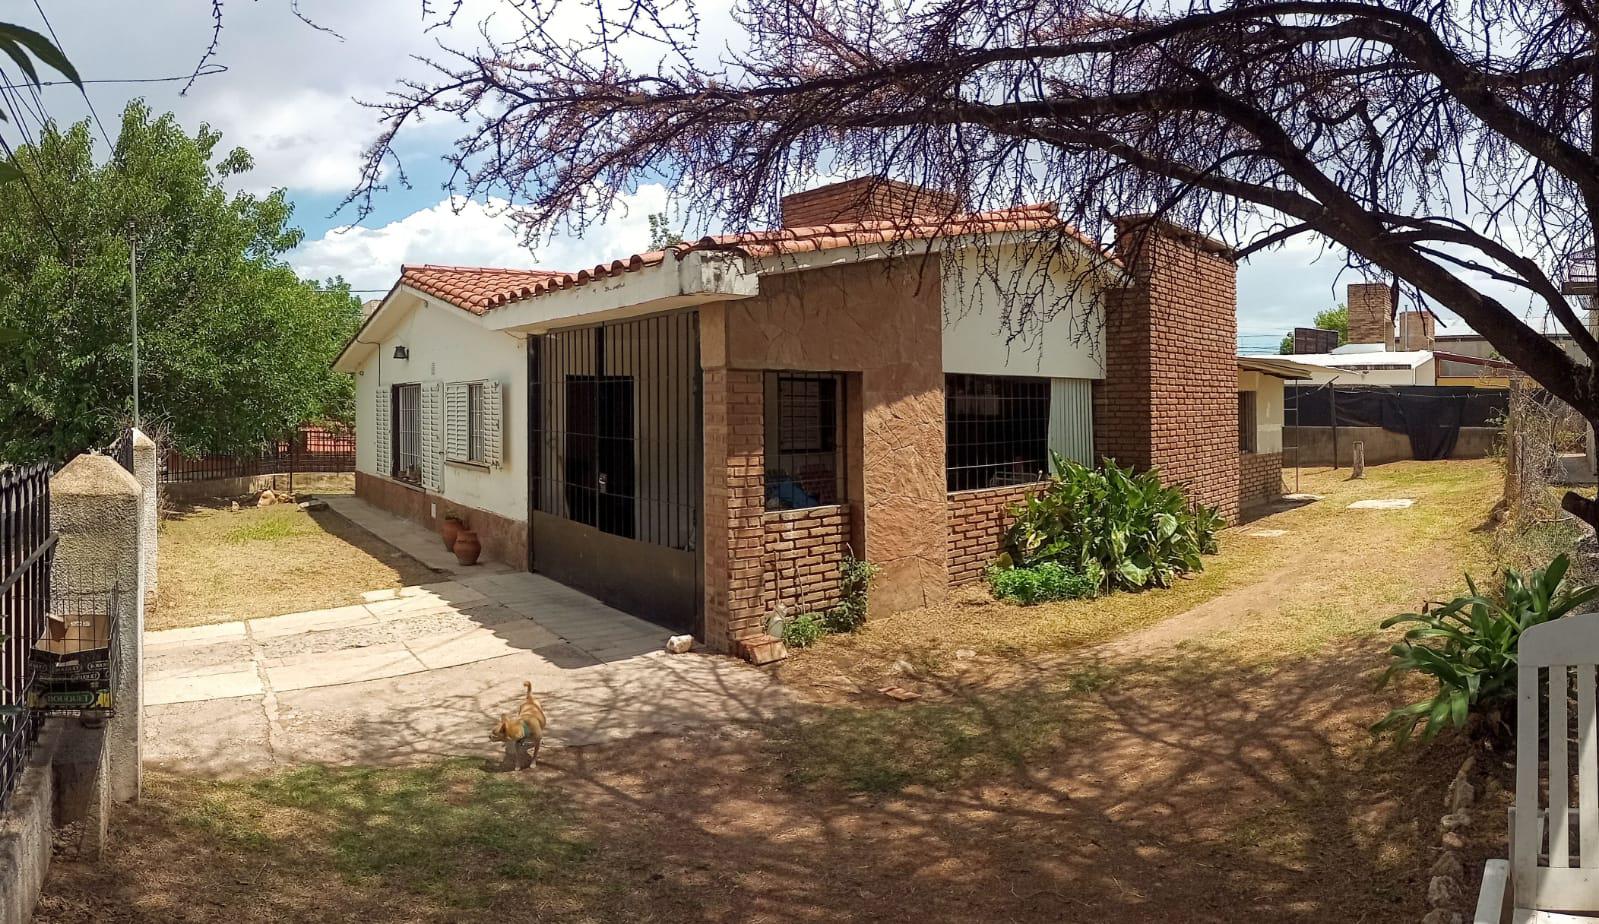 2 propiedades colindantes a restaurar en Miguel Muñoz, Villa Carlos Paz.